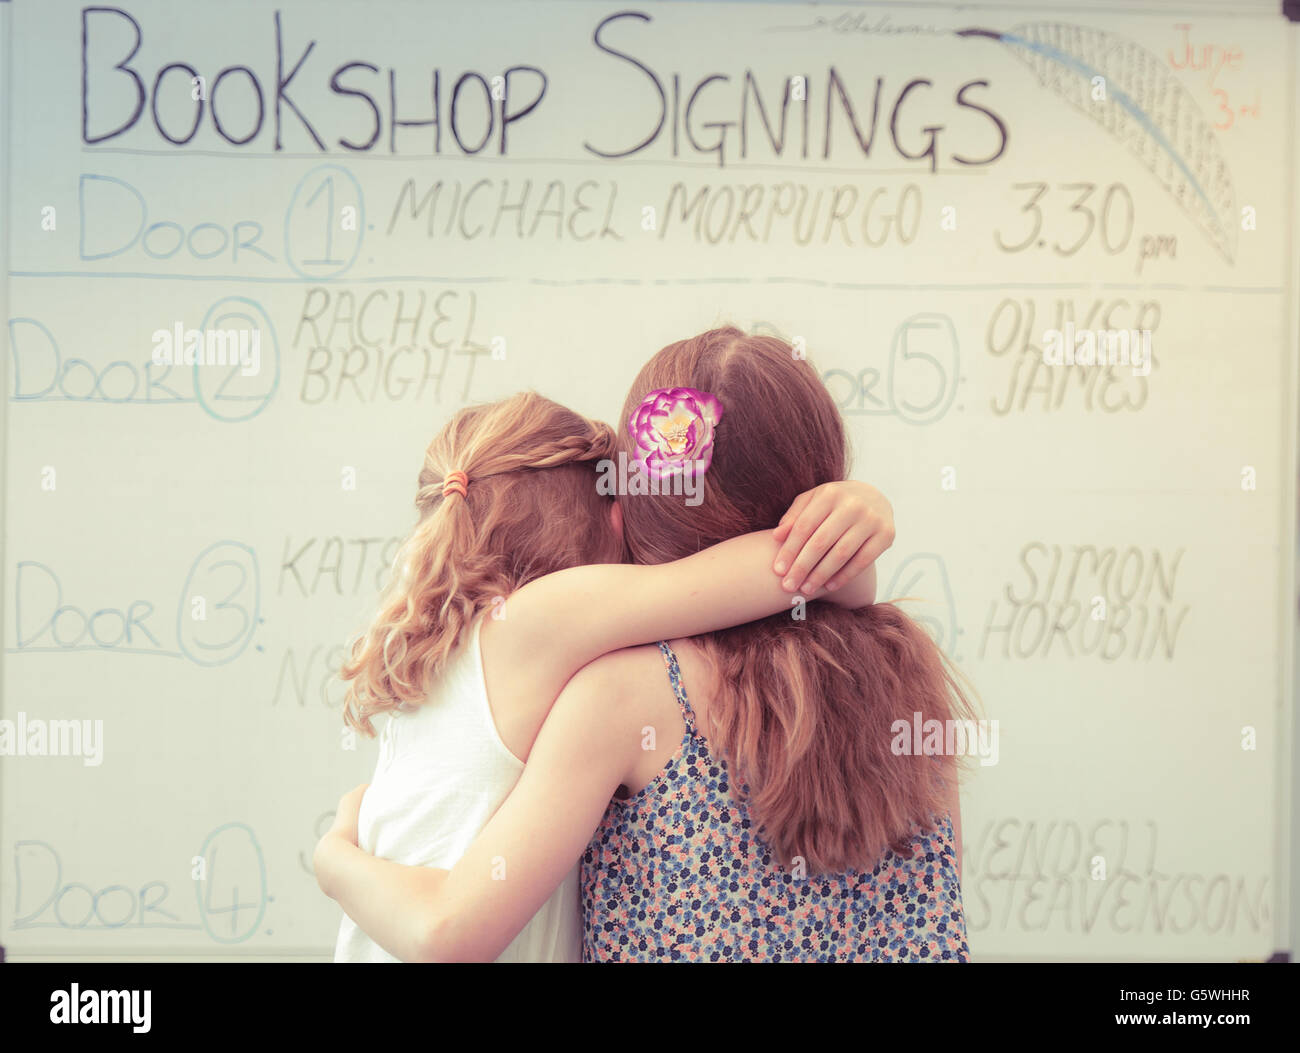 Vista posteriore di due ragazze alla ricerca presso il bookshop libro firma calendario presso la Hay Festival della letteratura e delle arti, Hay on Wye, Powys, Wales UK, Giugno 03 2016 Foto Stock